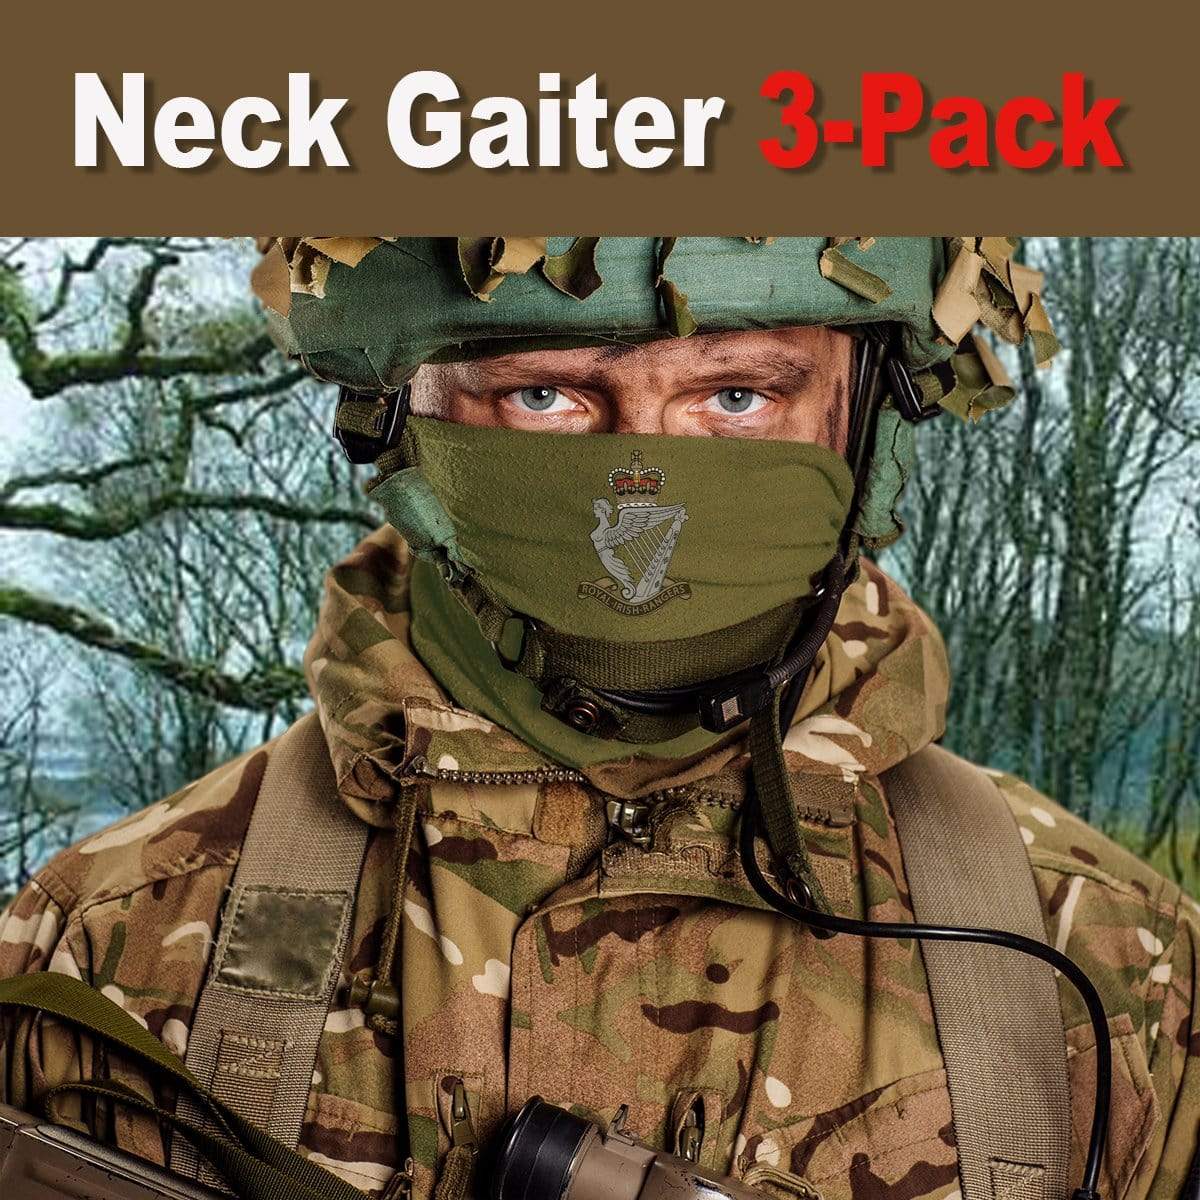 neck gaiter Bandana 3-Pack - Royal Irish Rangers Neck Gaiter 3-Pack Royal Irish Rangers Neck Gaiter/Headover 3-Pack